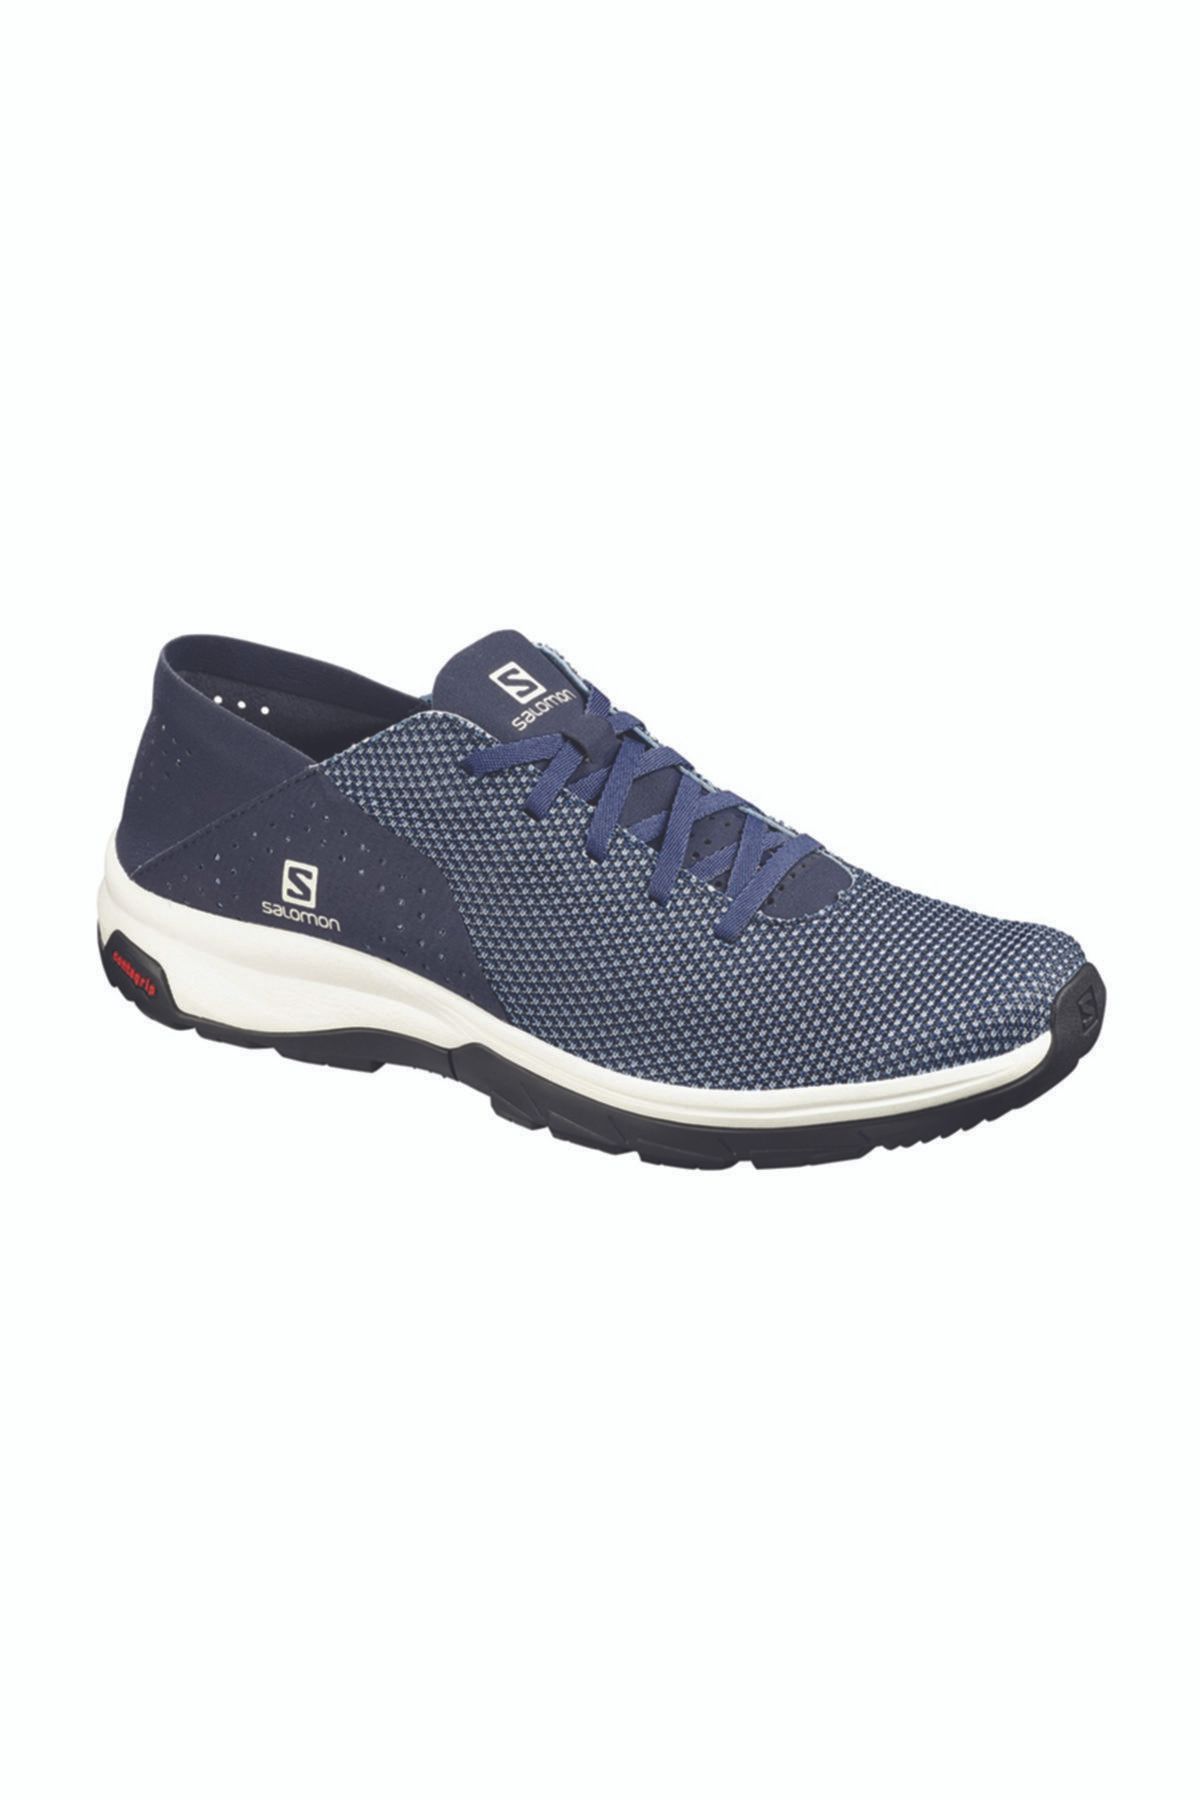 Salomon Tech Lite Erkek Outdoor Ayakkabı Mavi-beyaz